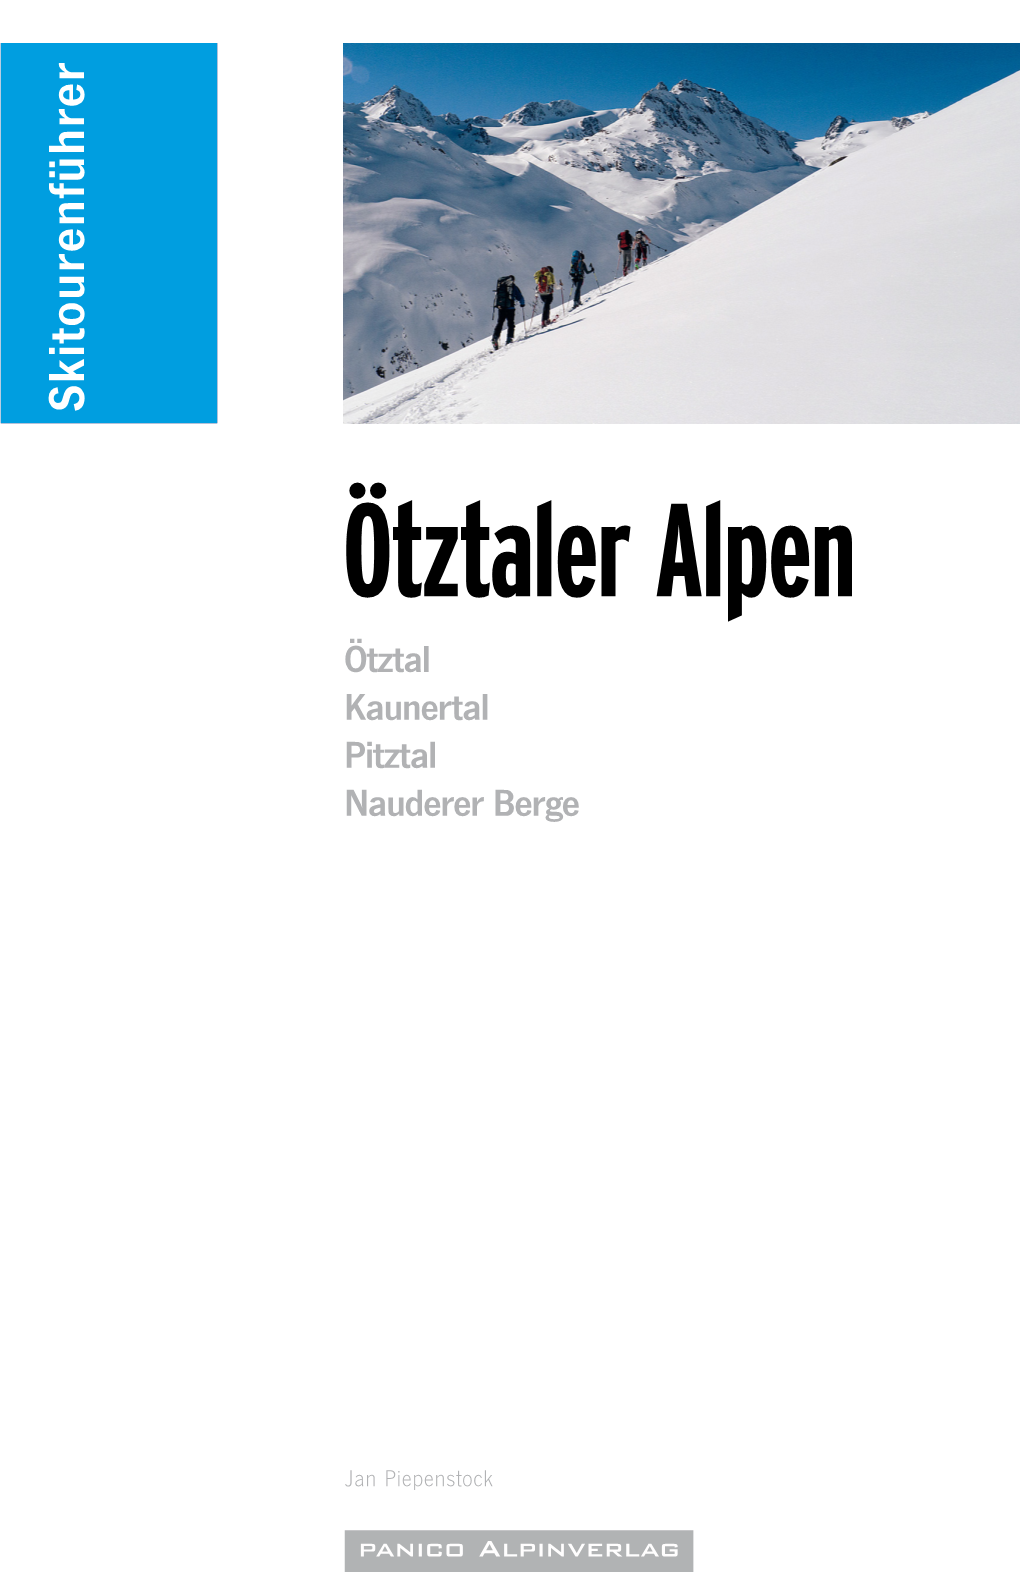 Ötztaler Alpen Ötztal Kaunertal Pitztal Nauderer Berge